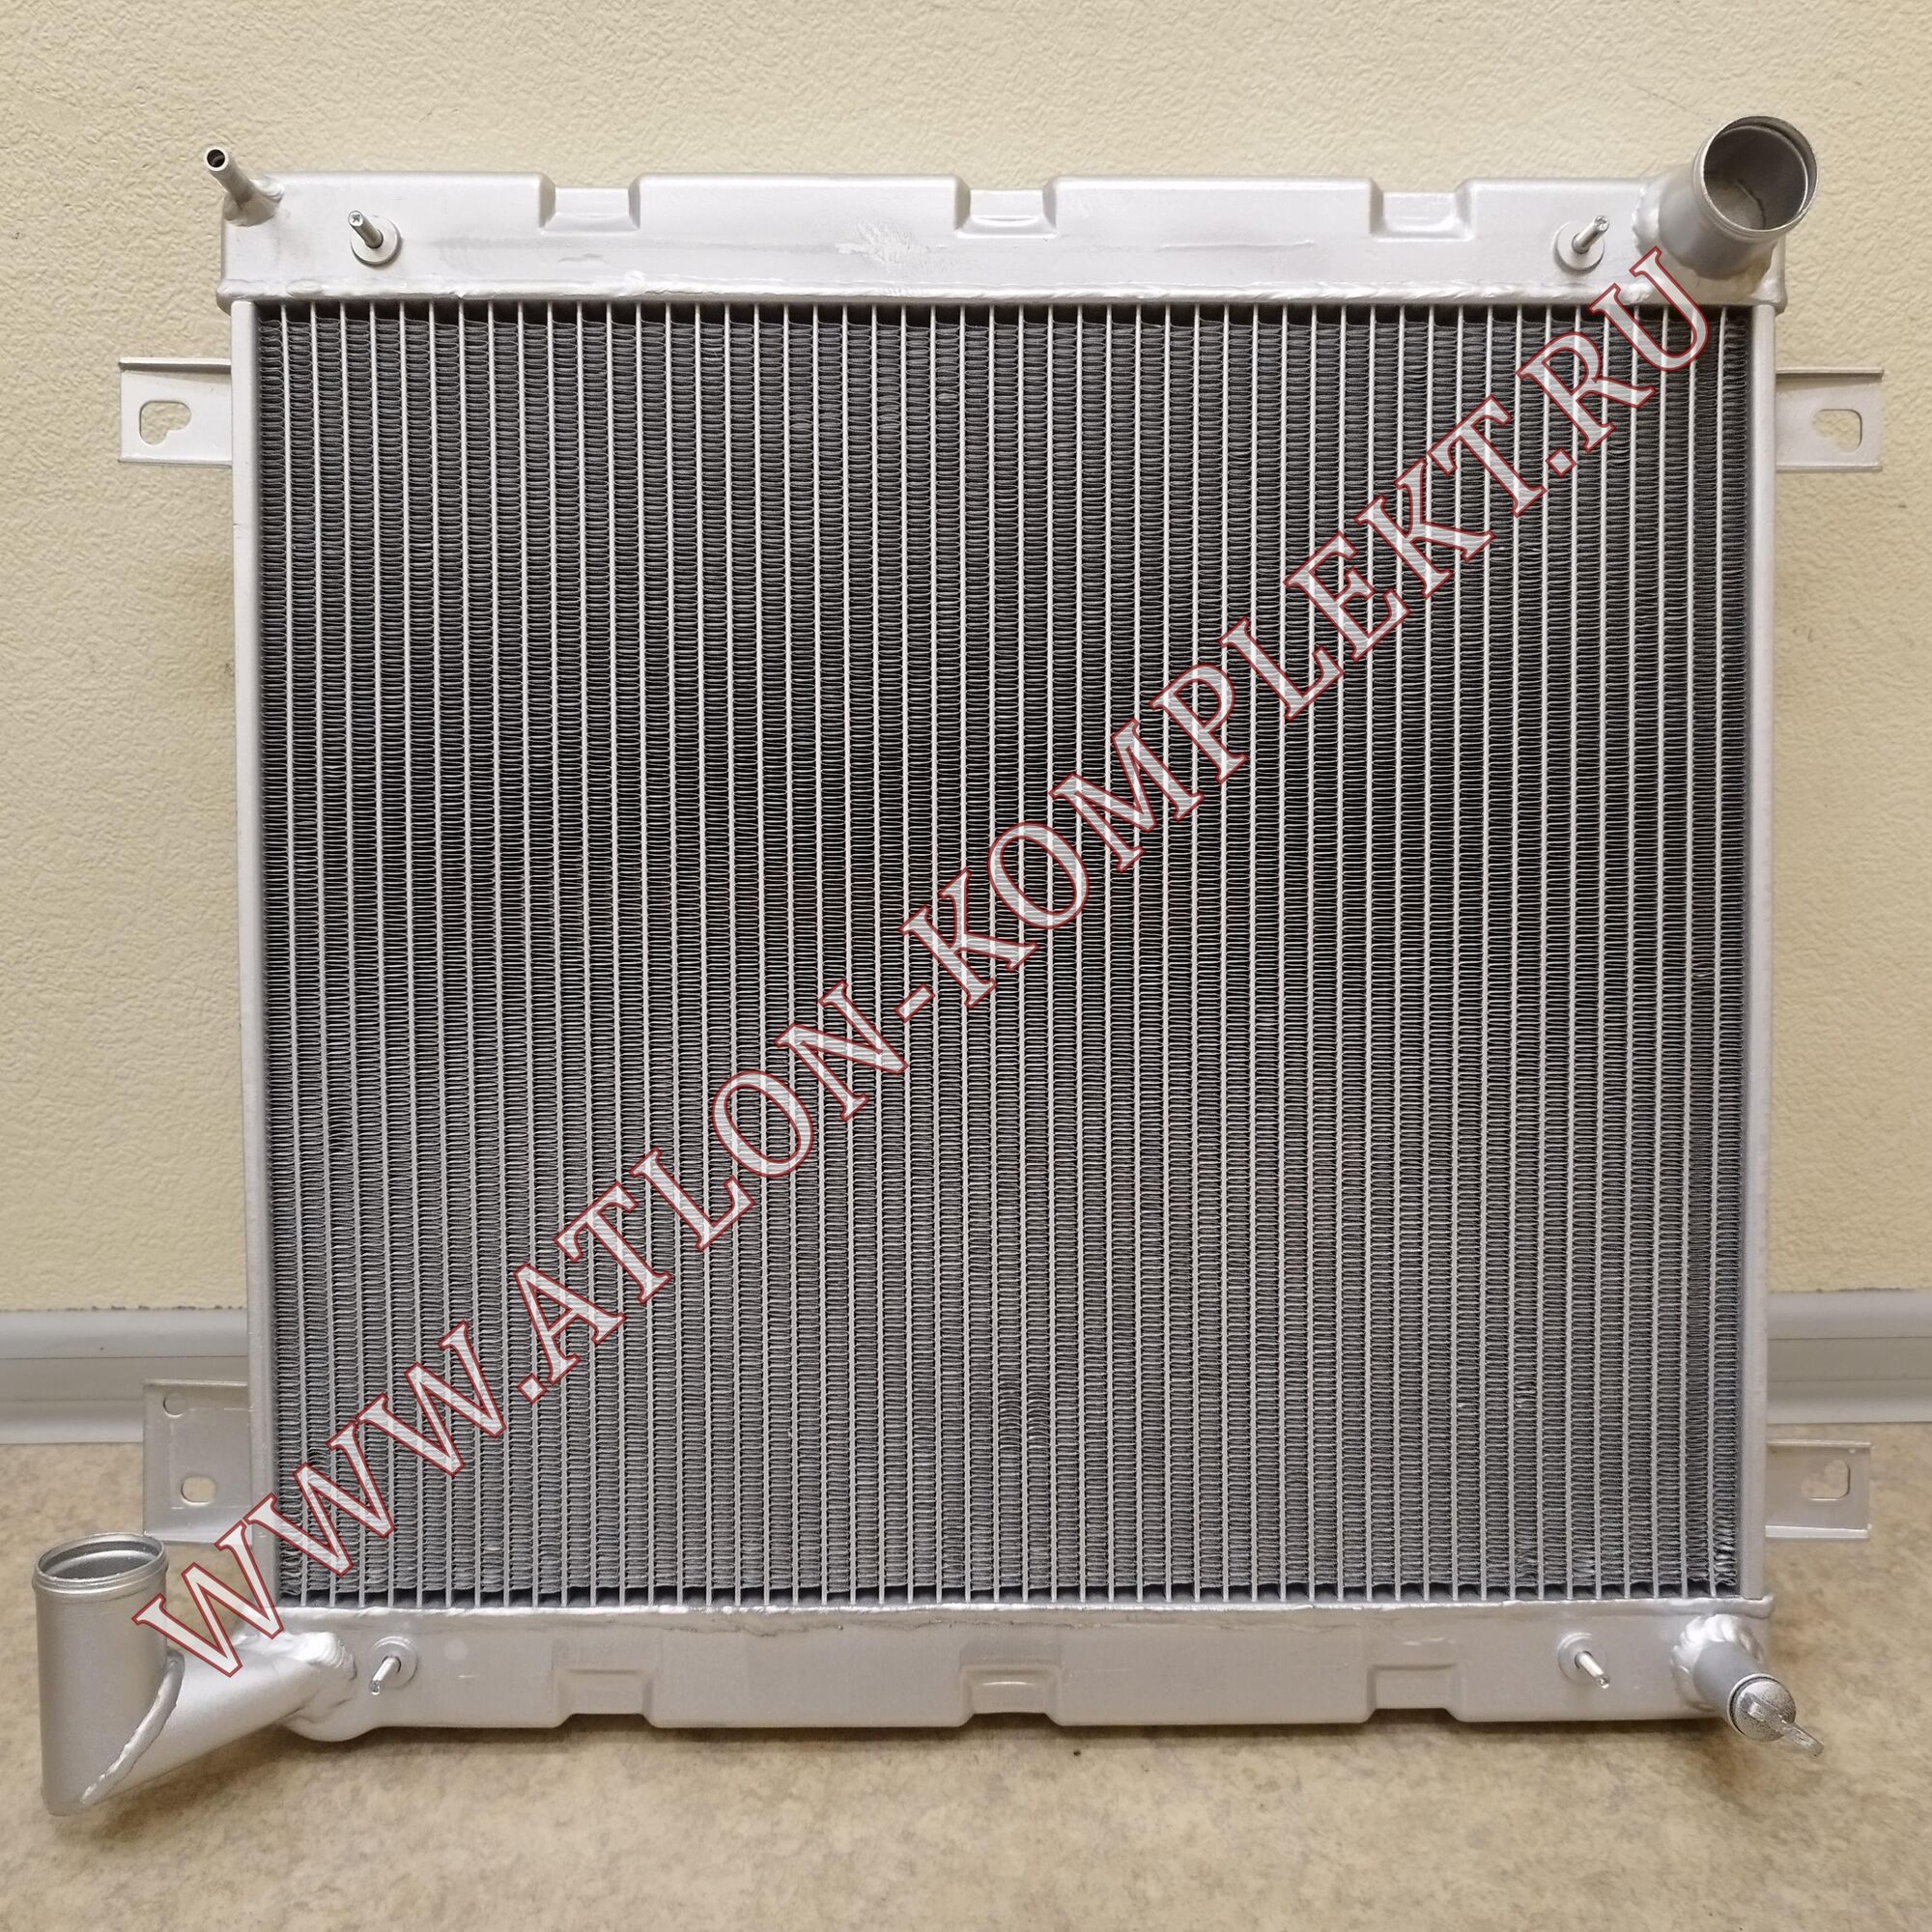 Радиатор ГАЗель-Бизнес с Cummins 2,8 алюминиевый LRc 03028b (073-1301010)